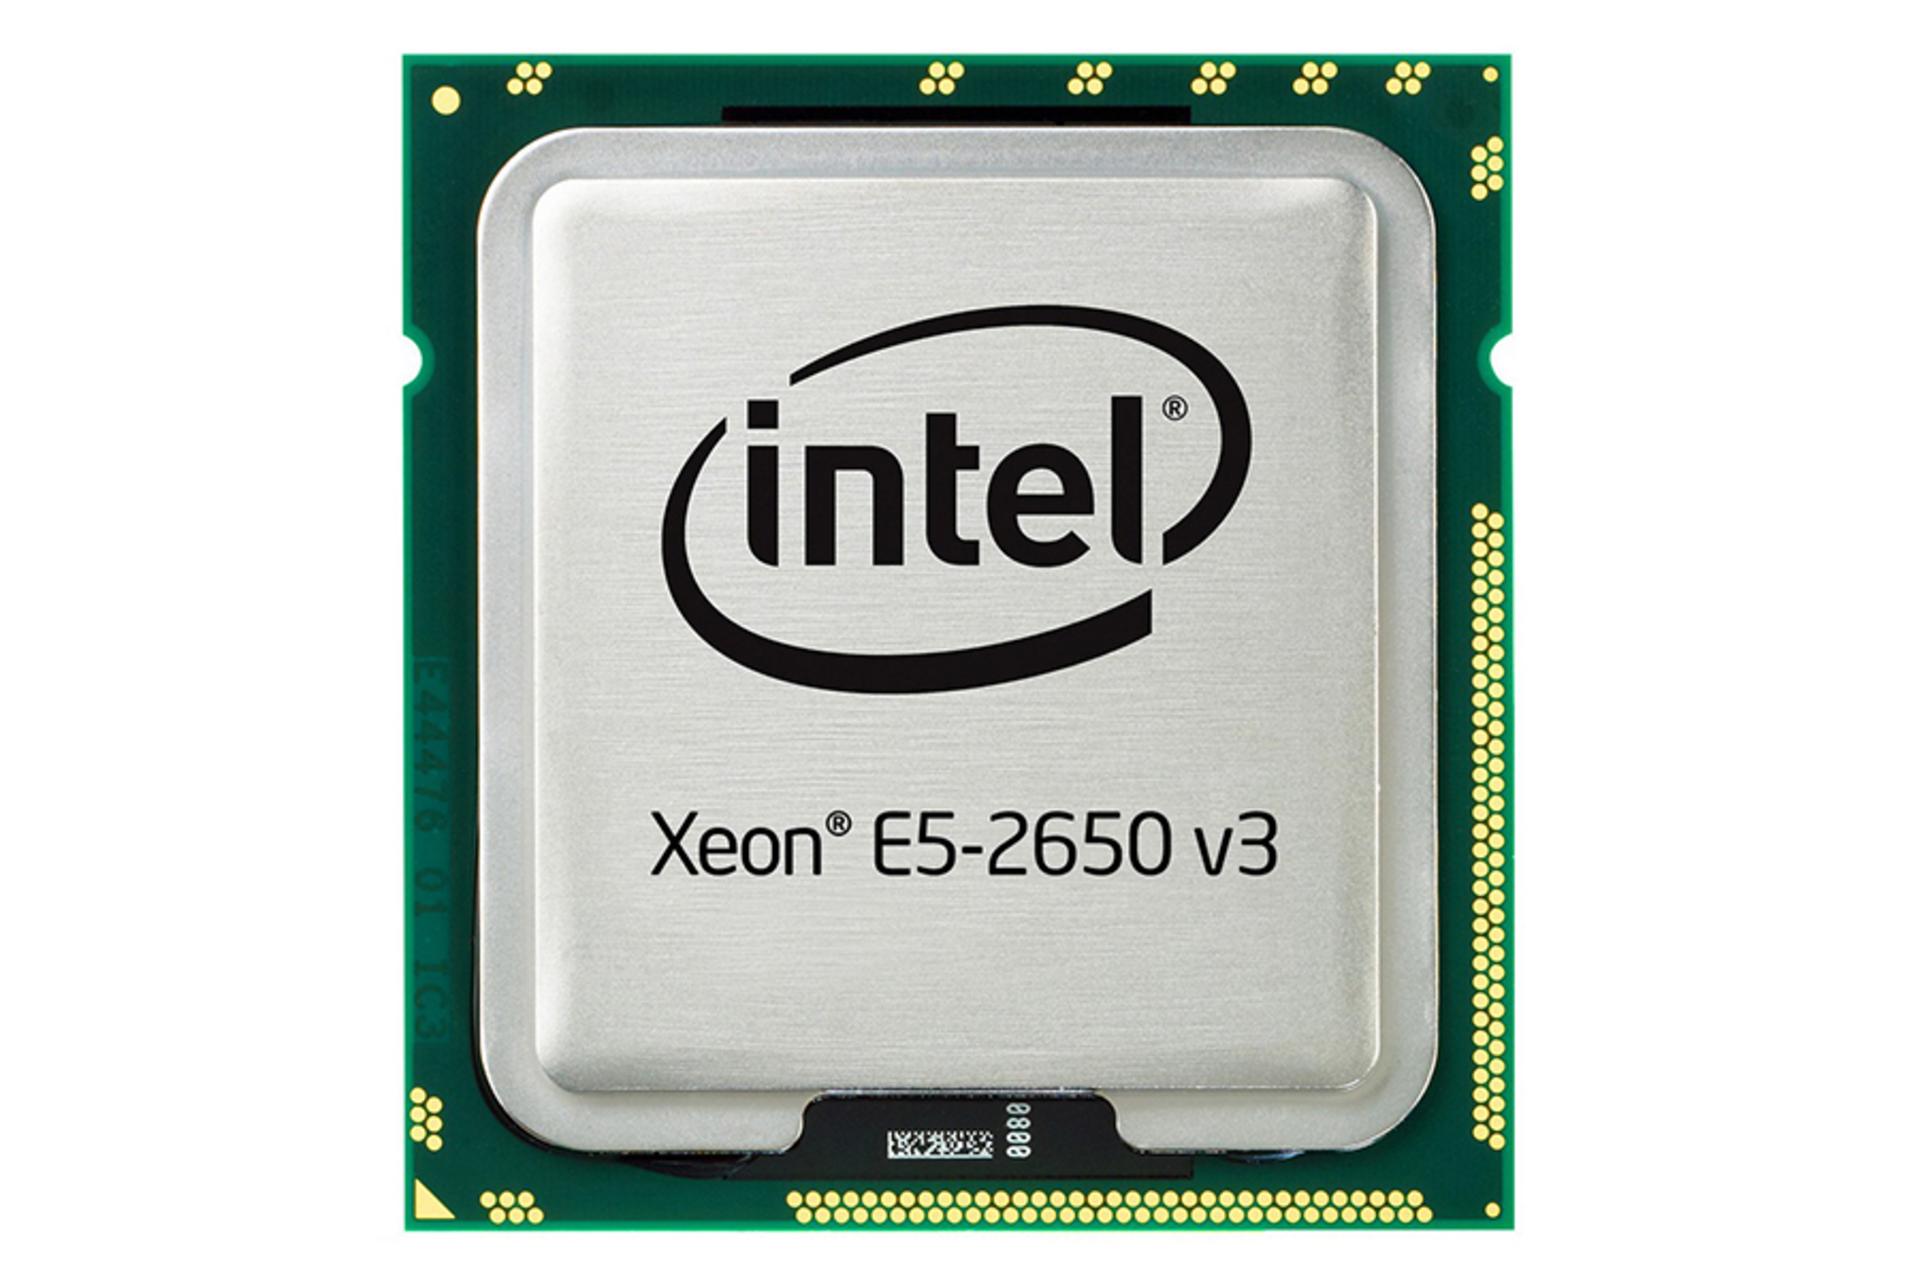 مرجع متخصصين ايران اينتل Xeon E5-2650 V3